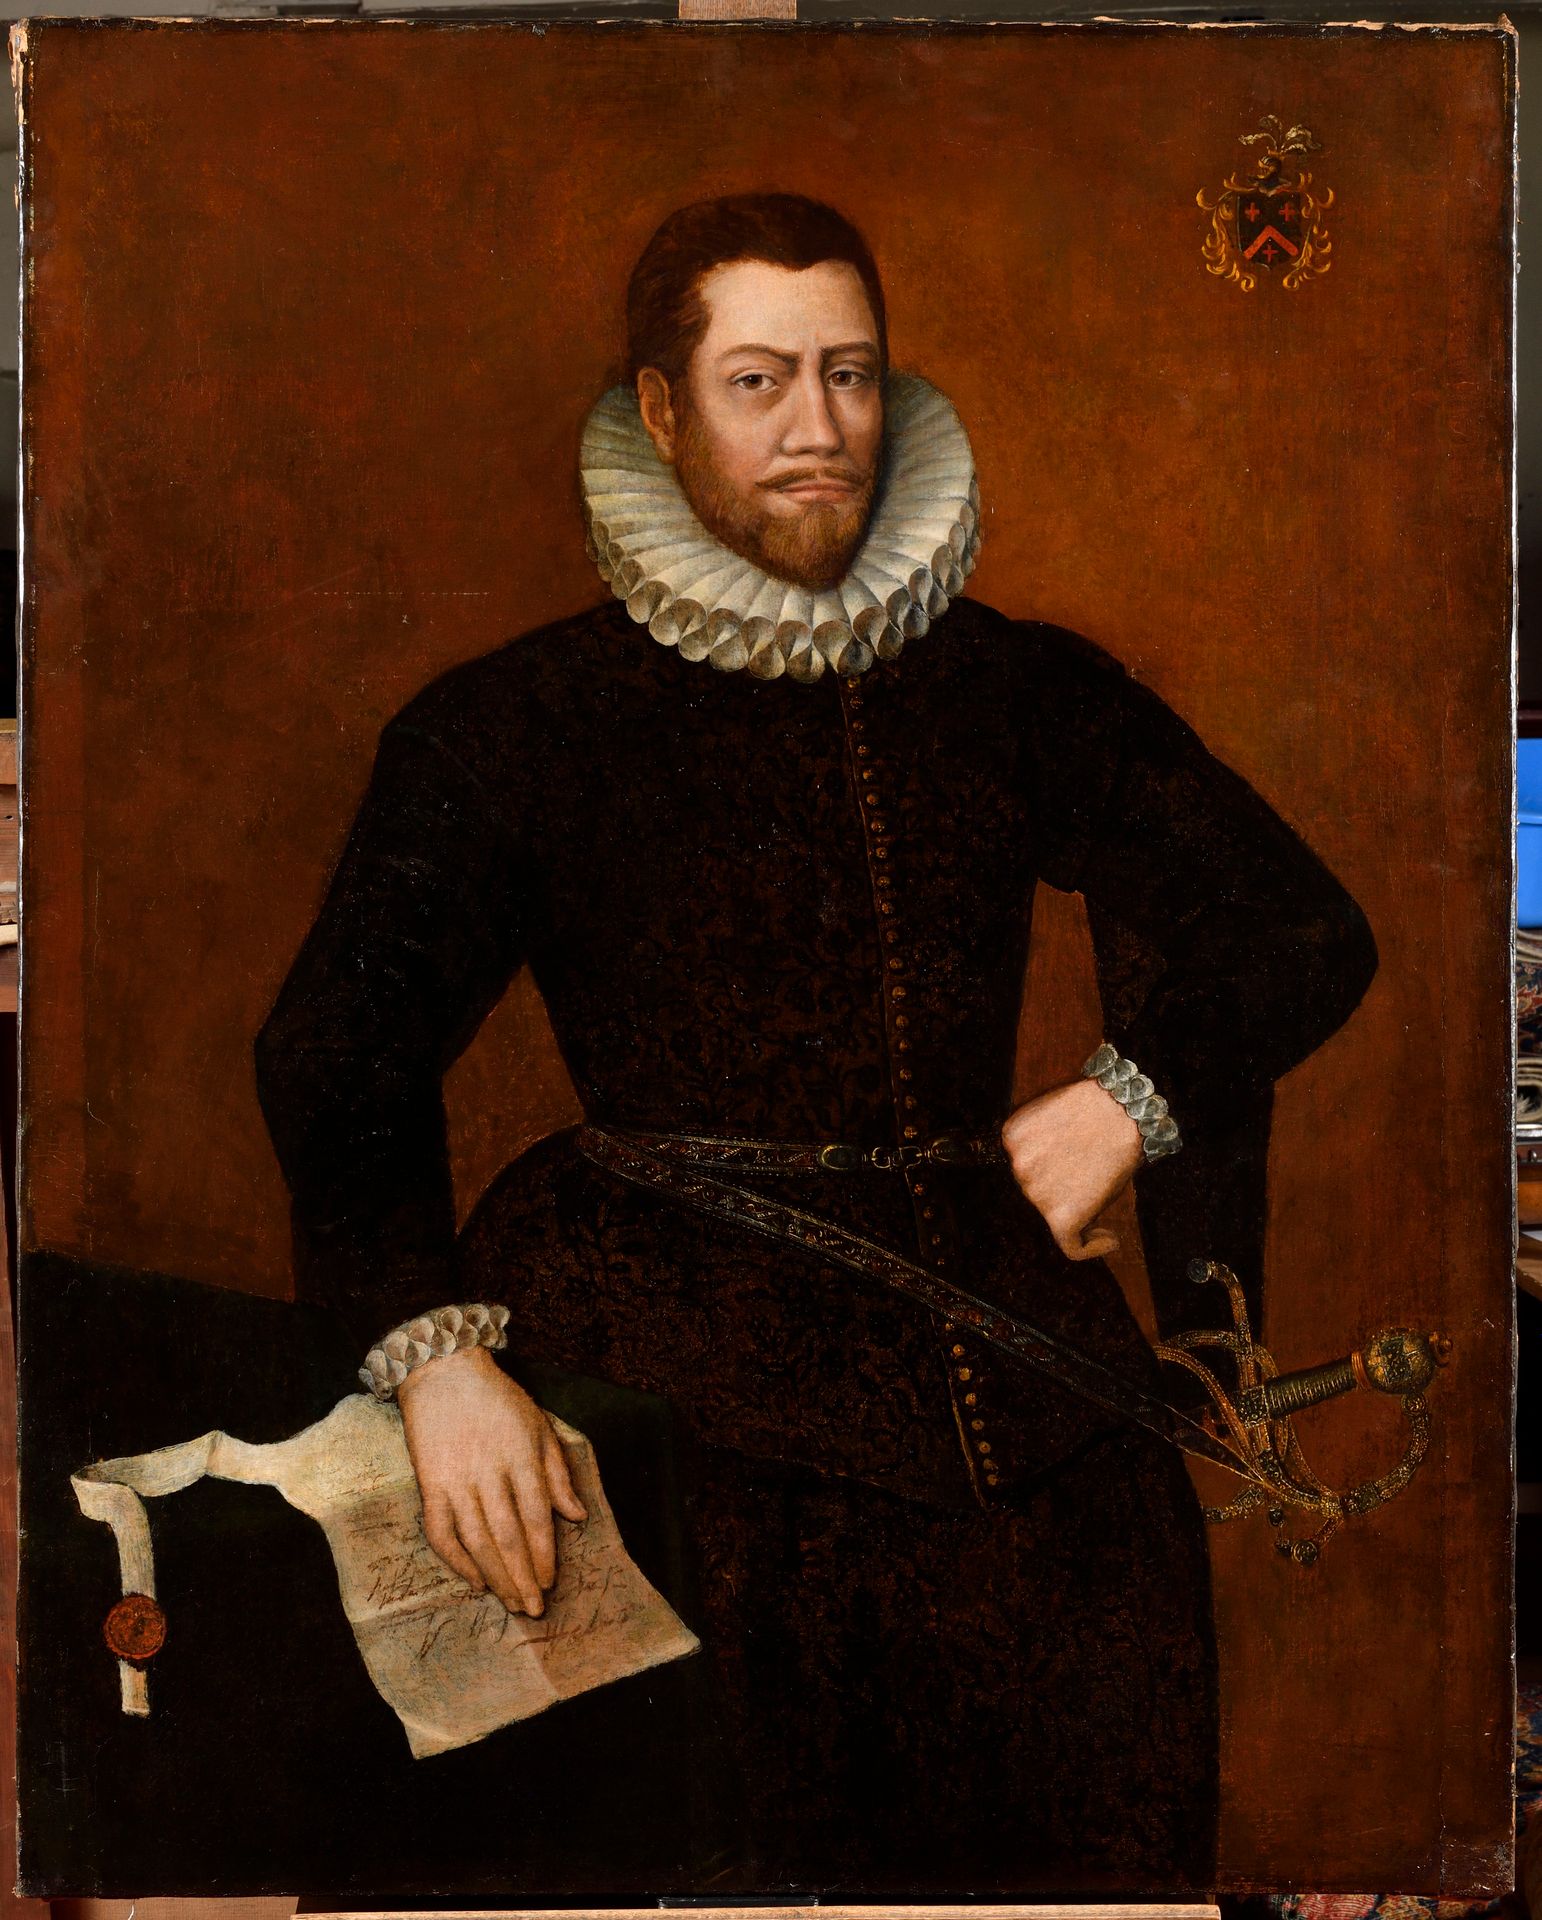 Null 德国学校 约1580年
穿着宫廷服装的男子全长画像 
帆布
无框架
高：113厘米
宽度：91厘米
重要的旧修复品

专家：图尔金内阁